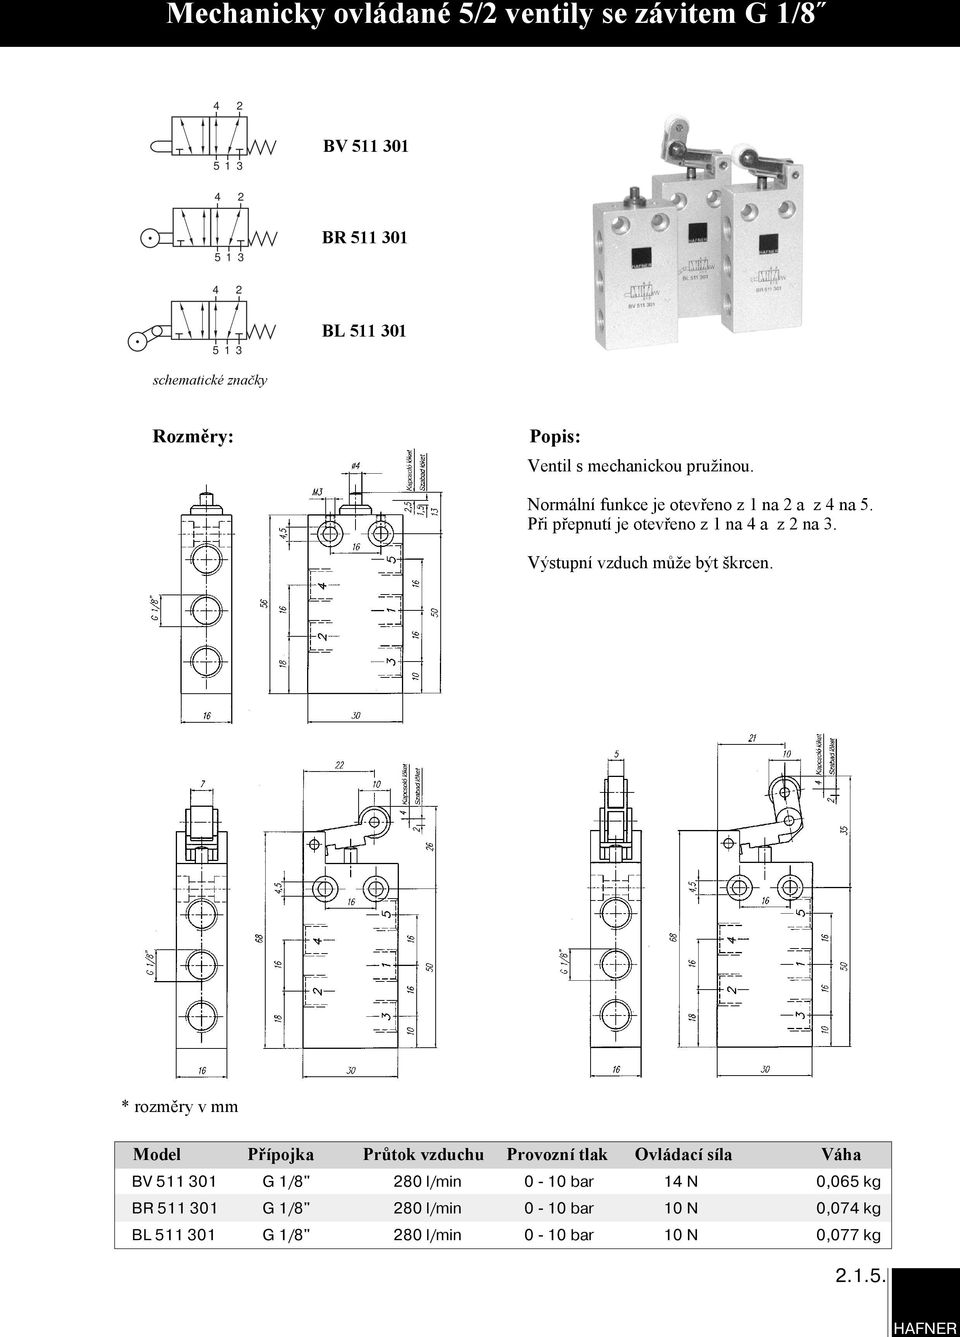 Model Přípojka Průtok vzduchu Provozní tlak Ovládací síla Váha BV 511 301 G 1/8" 80 l/min 0-10 bar 1 N 0,065